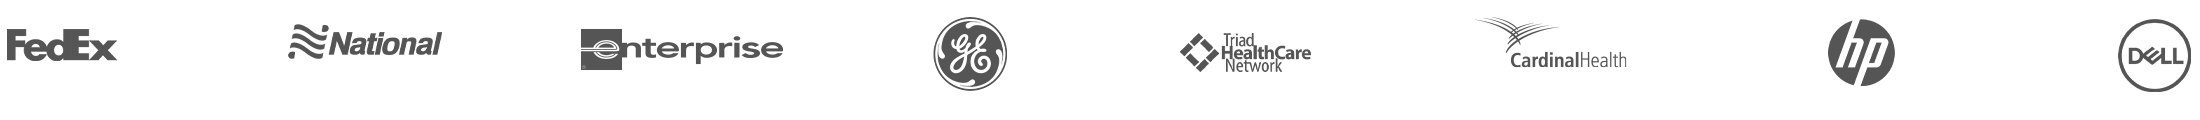 logo grid